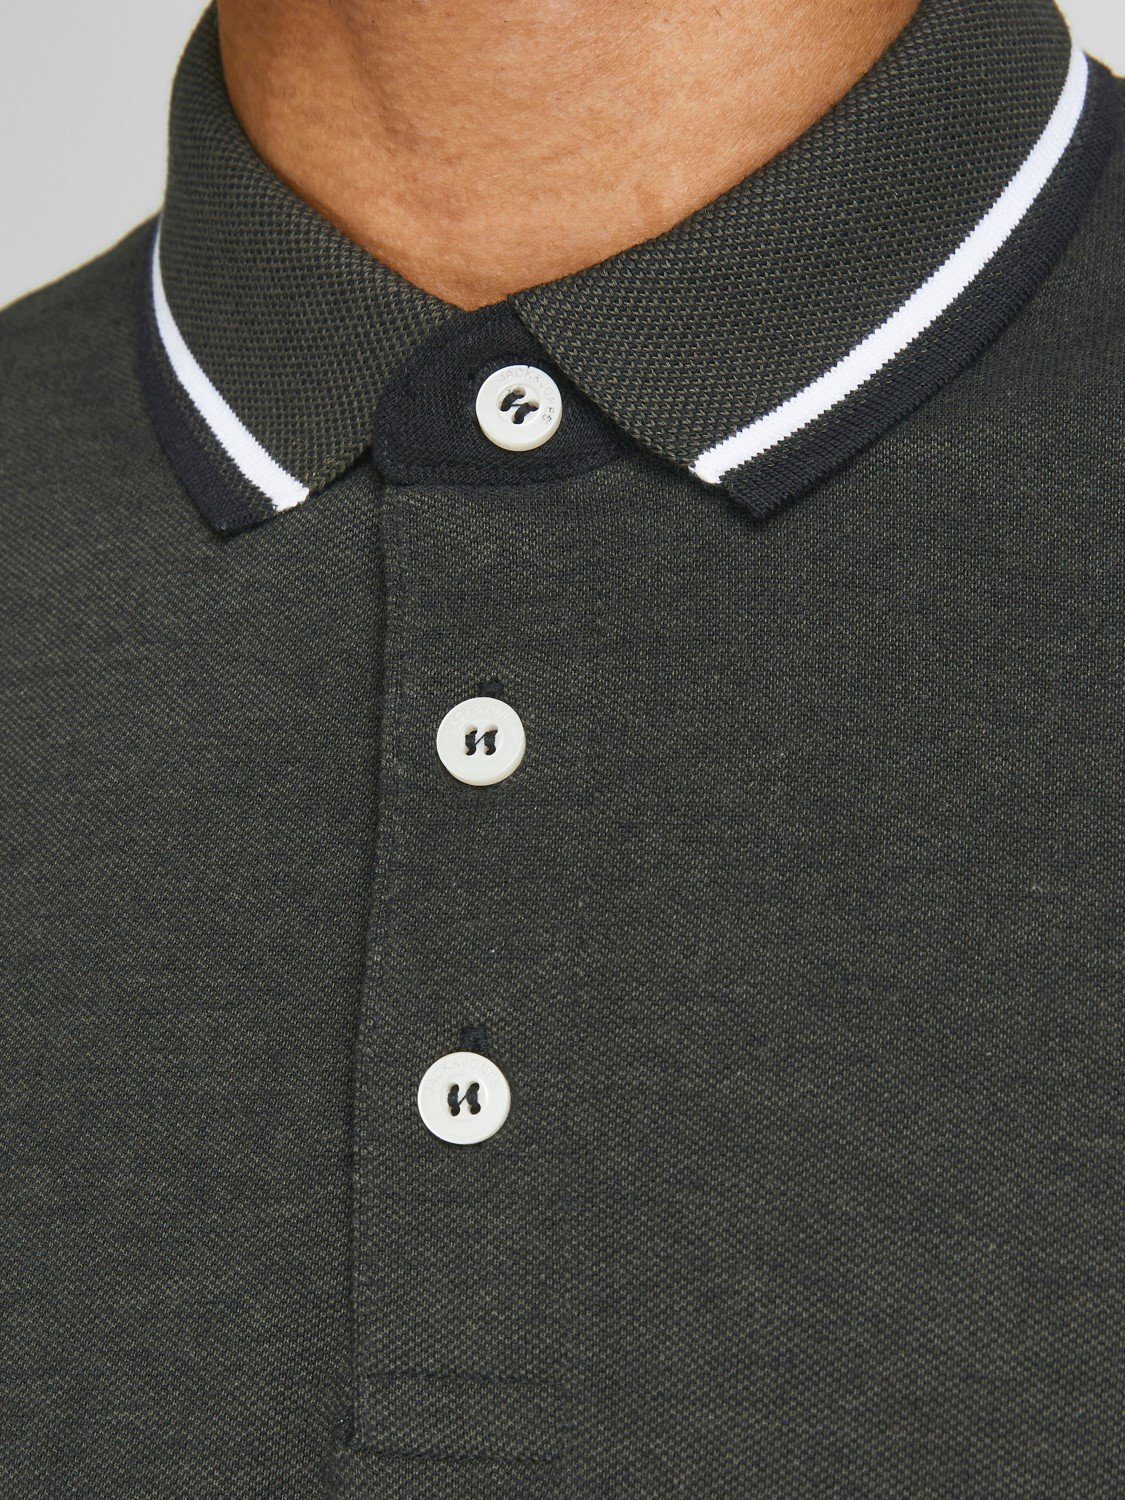 Dunkelgrün in Hemd 3613 JJEPAULOS Jack Pique (1-tlg) Jones & Kragen Polo Poloshirt Shirt Sommer Cotton